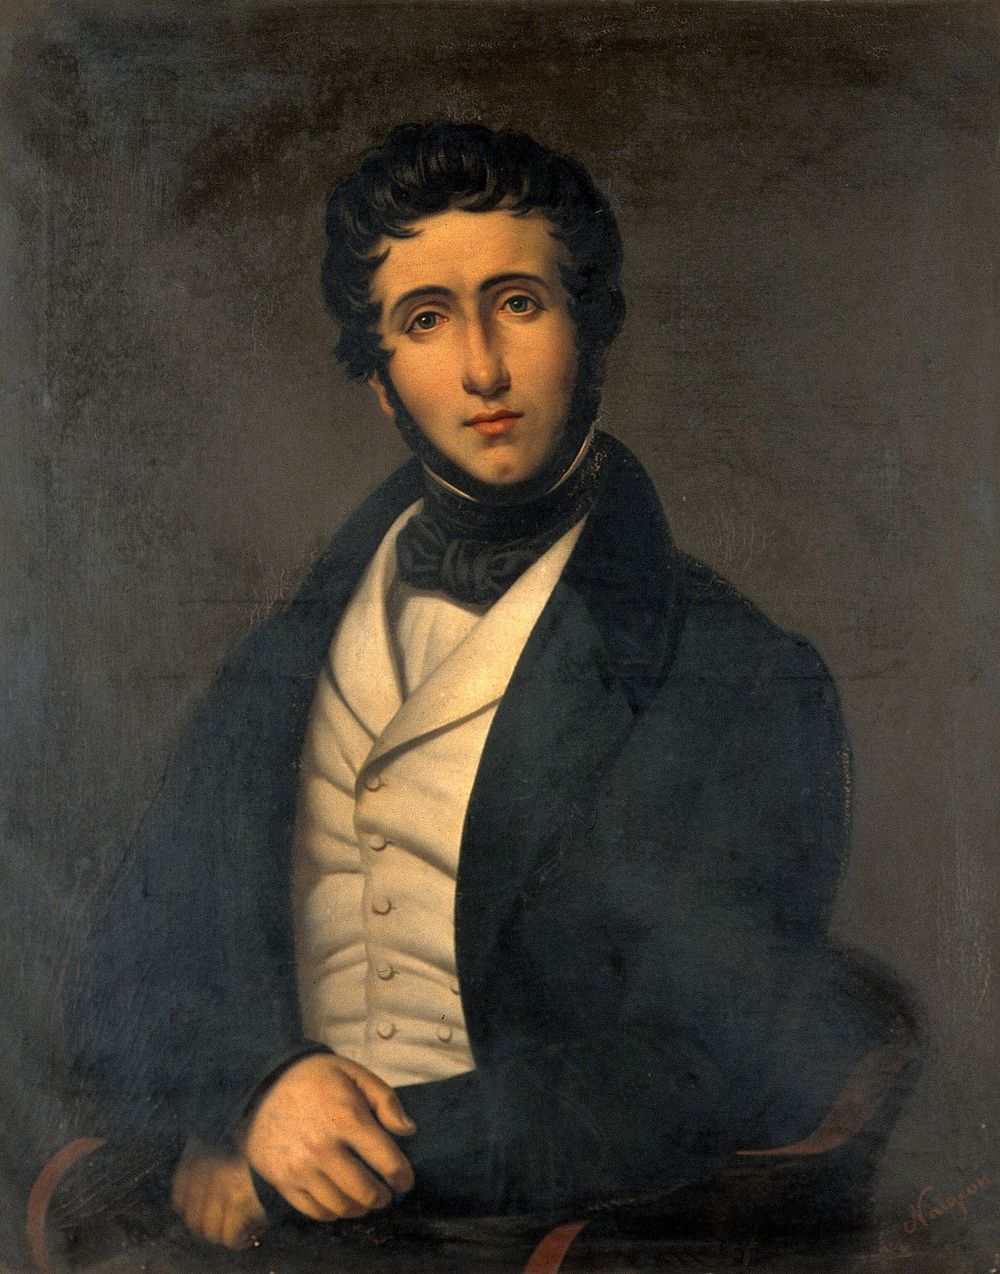 Jean-Zuléma Amussat (1796-1856), surgeon-anatomist. Oil painting.